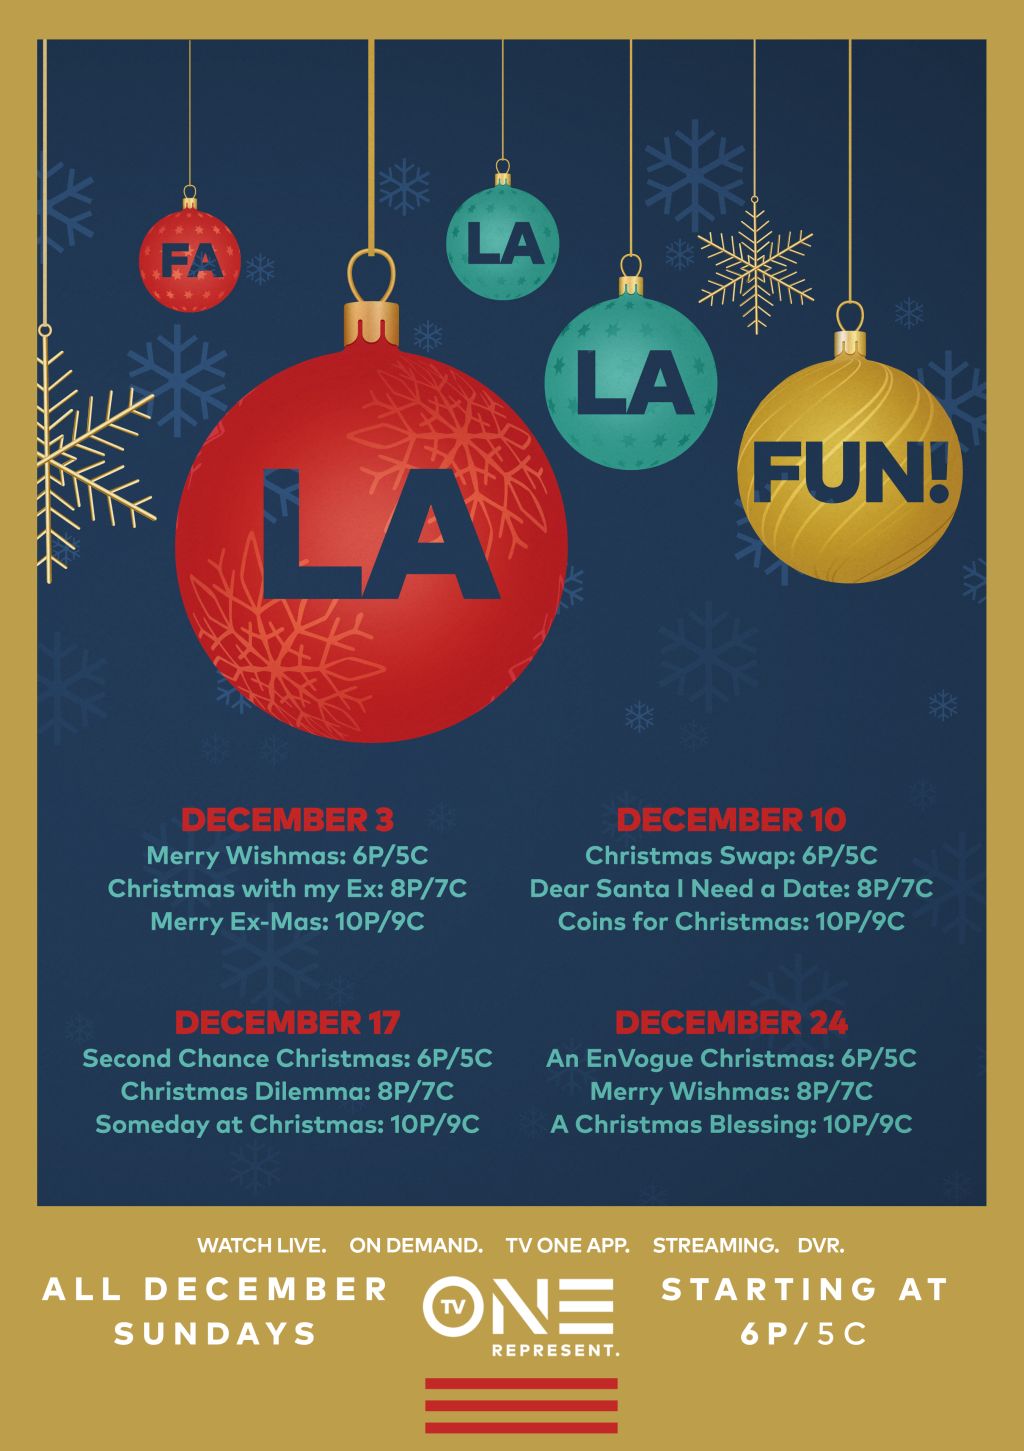 Fa La La La FUN - TV One's Holiday Programming Campaign